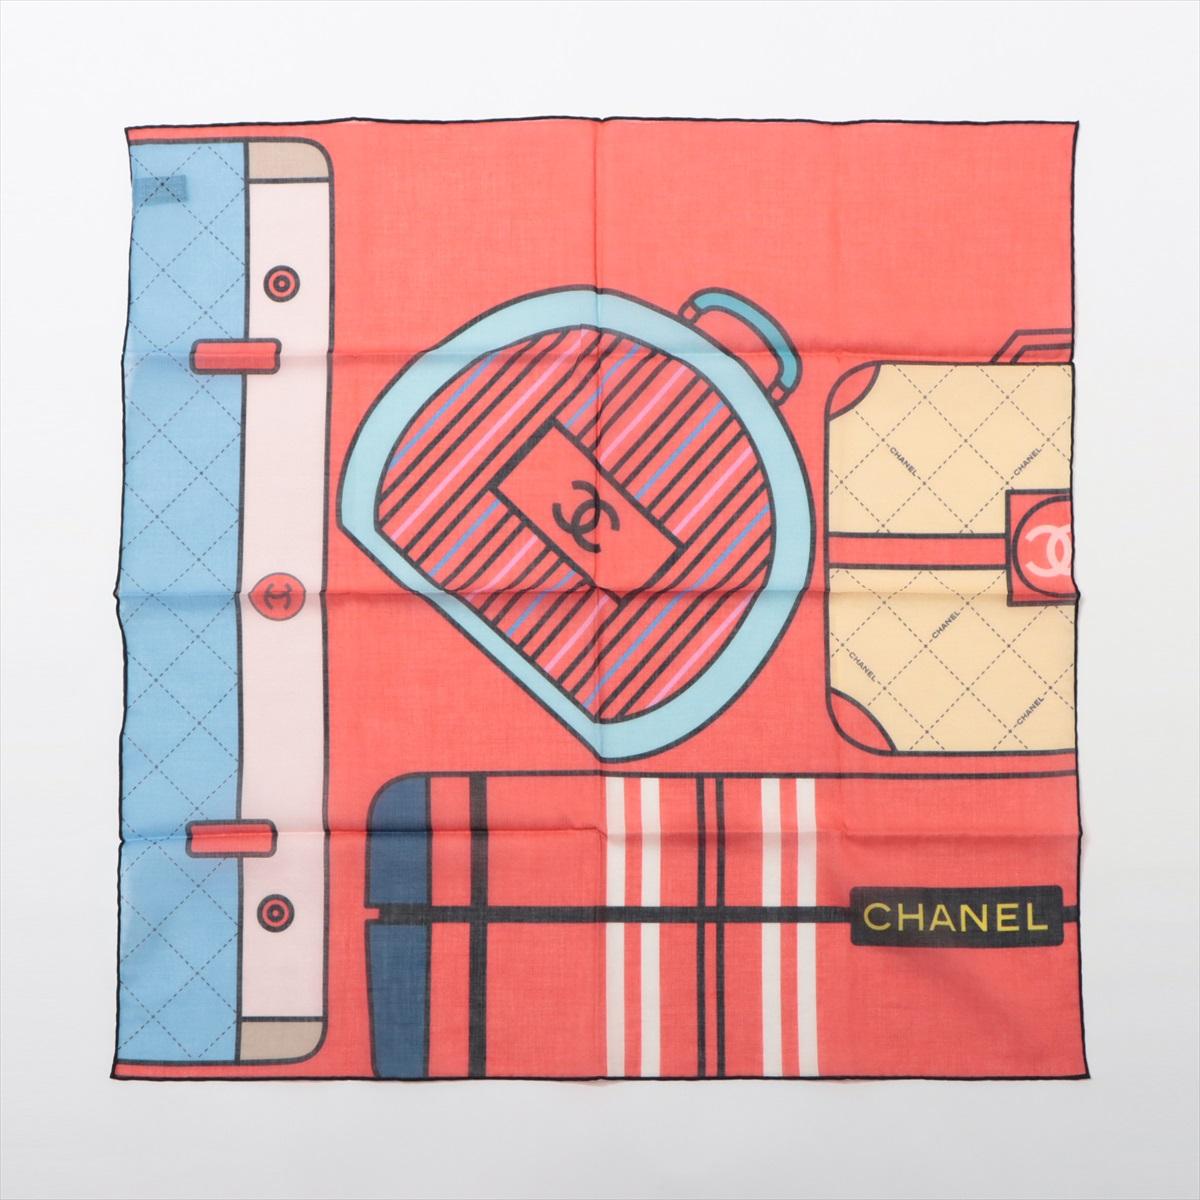 L'écharpe Chanel en coton imprimé multicolore est un accessoire vibrant et chic qui incarne l'essence du style emblématique de Chanel. Confectionnée en coton doux et léger, cette écharpe présente un imprimé accrocheur mettant en scène les sacs et